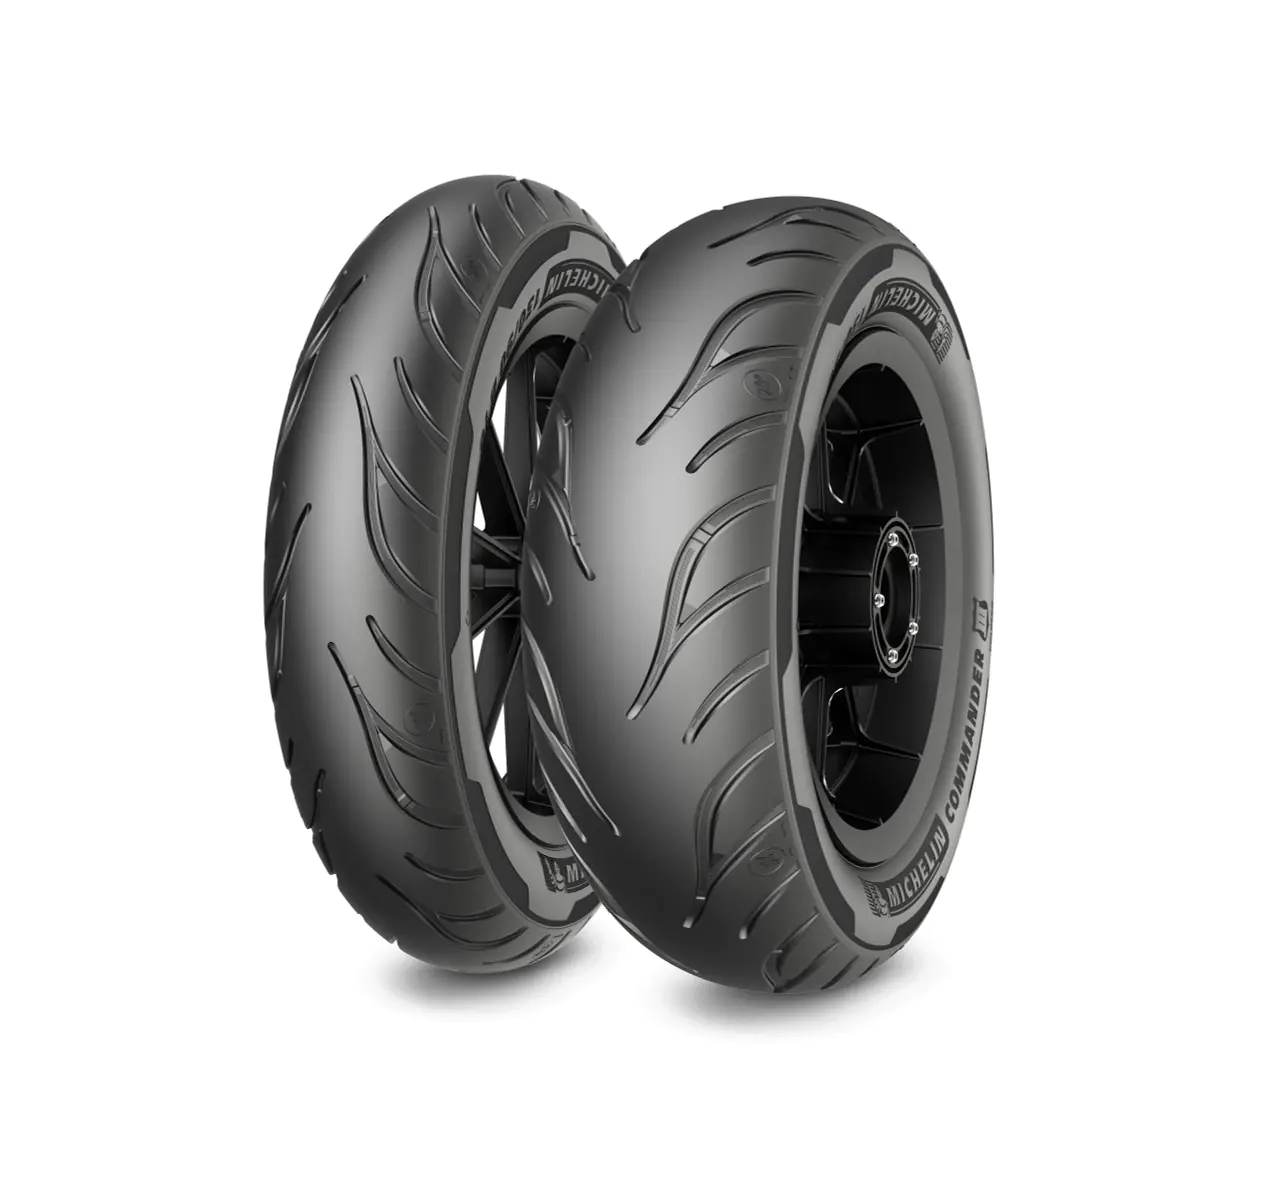 Michelin Michelin 140/90-15 76H COMMANDER III CRUISER pneumatici nuovi Estivo 